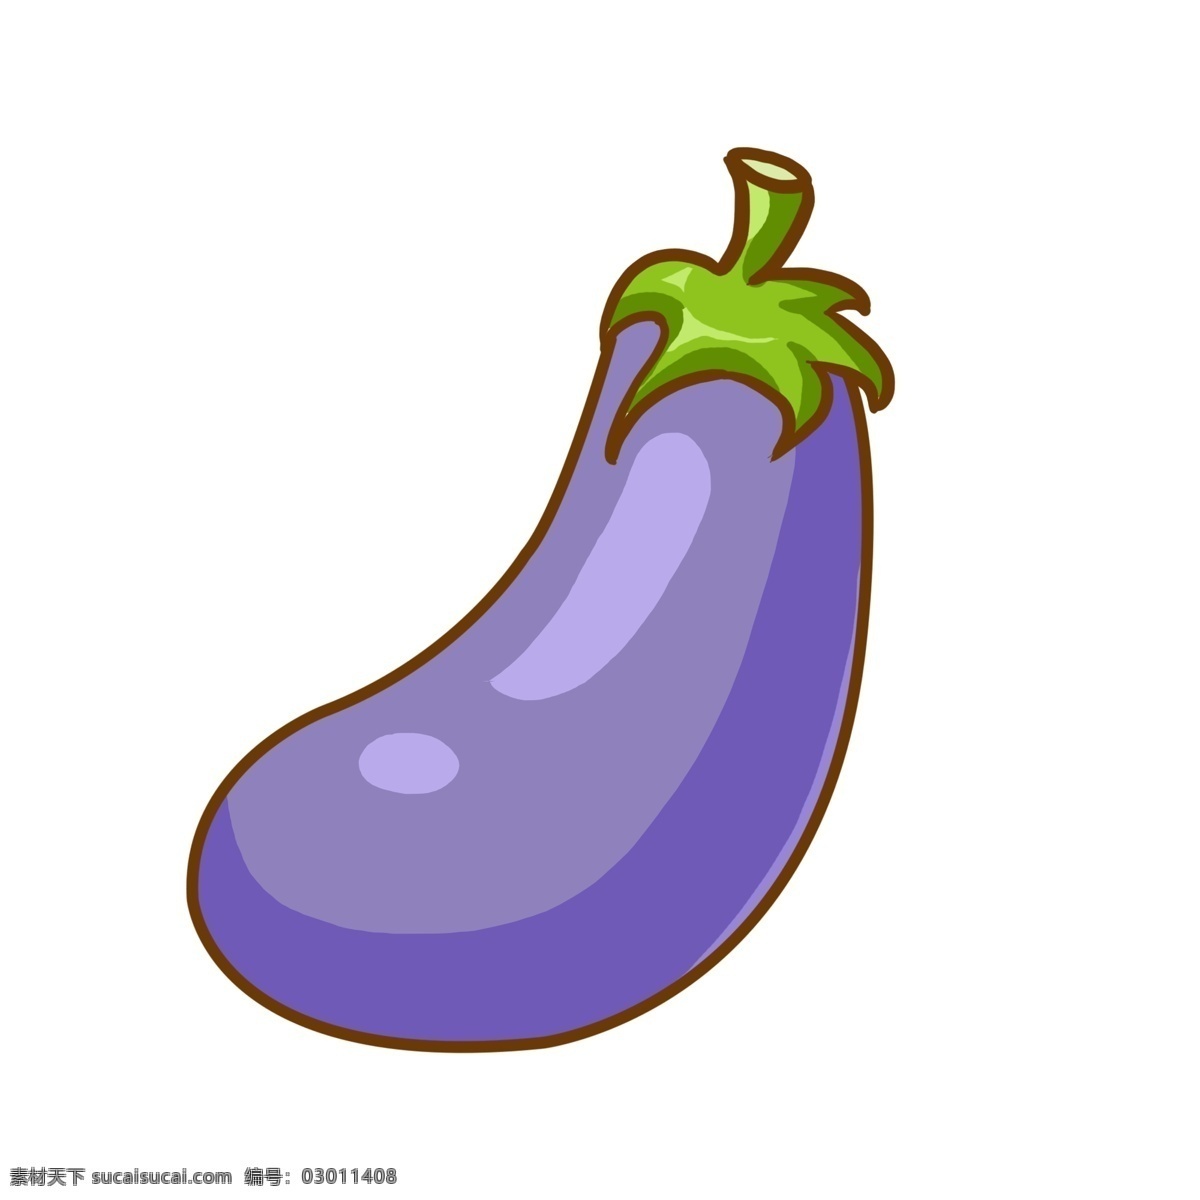 一个 紫色 茄子 插画 一个茄子 食材 蔬菜 紫色茄子 长形茄子 绿色 蔬菜茄子插图 炒茄子